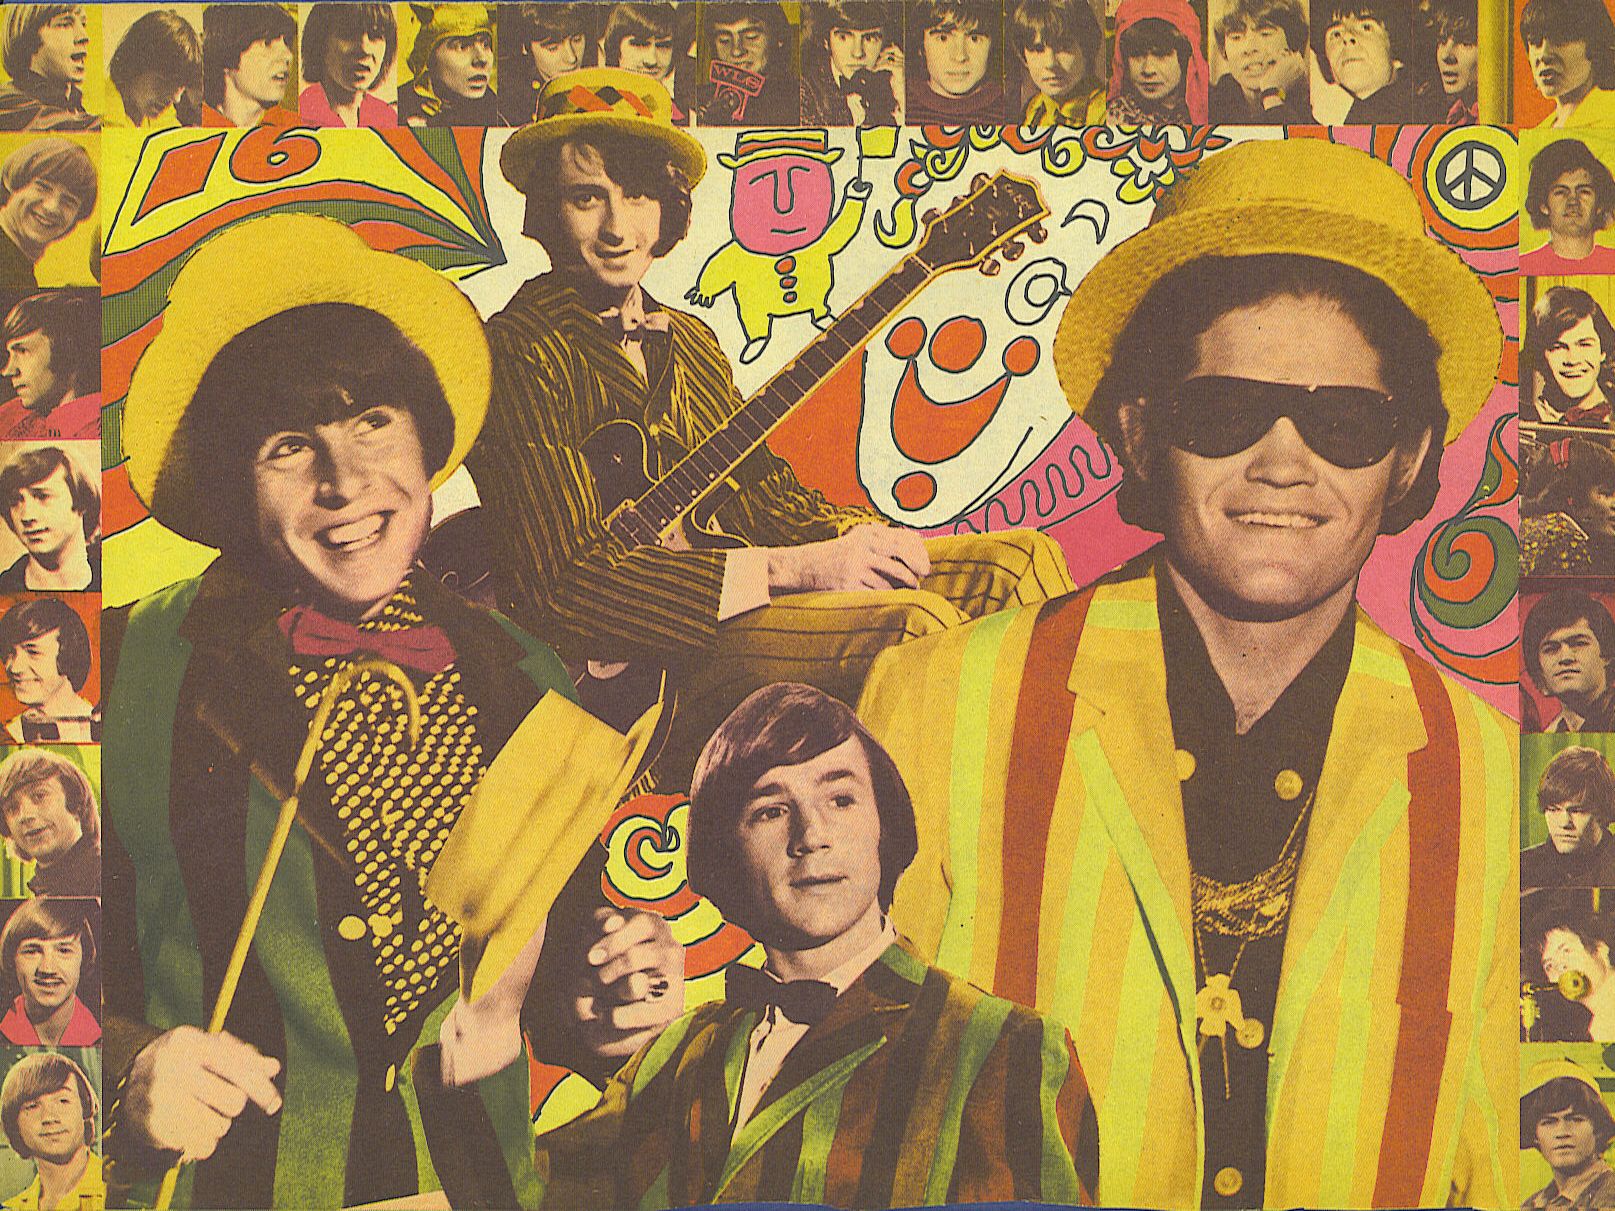 Monkees Wallpaper. Monkees Wallpaper, The Monkees Wallpaper and The Monkees Car Wallpaper